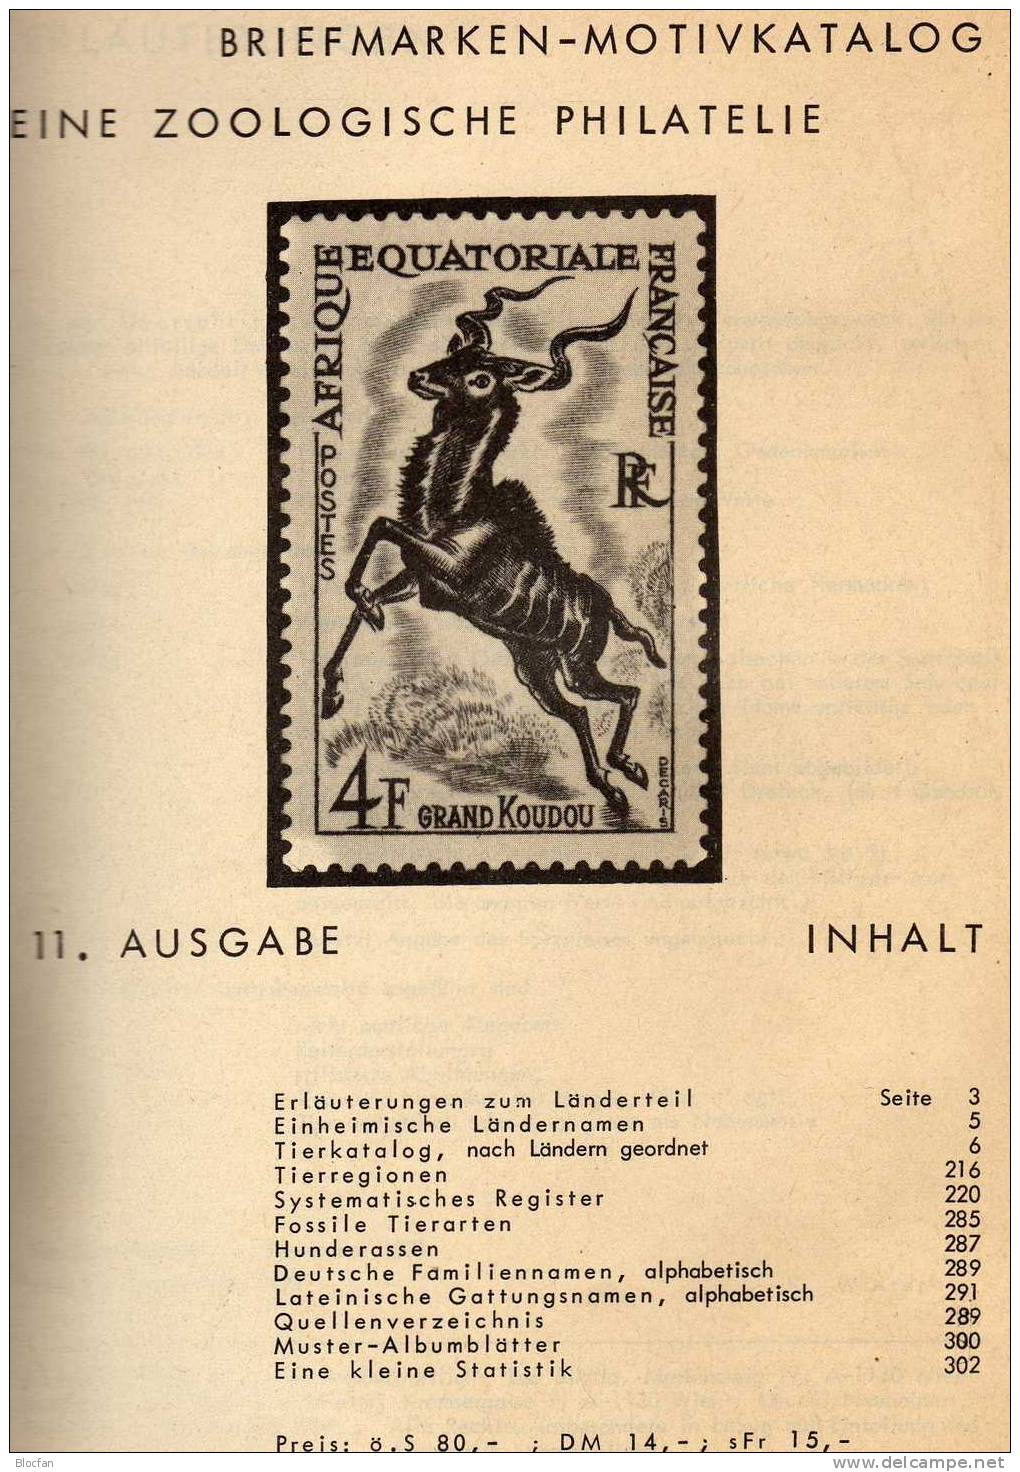 Zoo Philatelie Katalog Tiere Auf Briefmarken1972 Antiquarisch 7€ Zoologie Tierwelt Fauna Special Catalogue Of The World - Briefe U. Dokumente